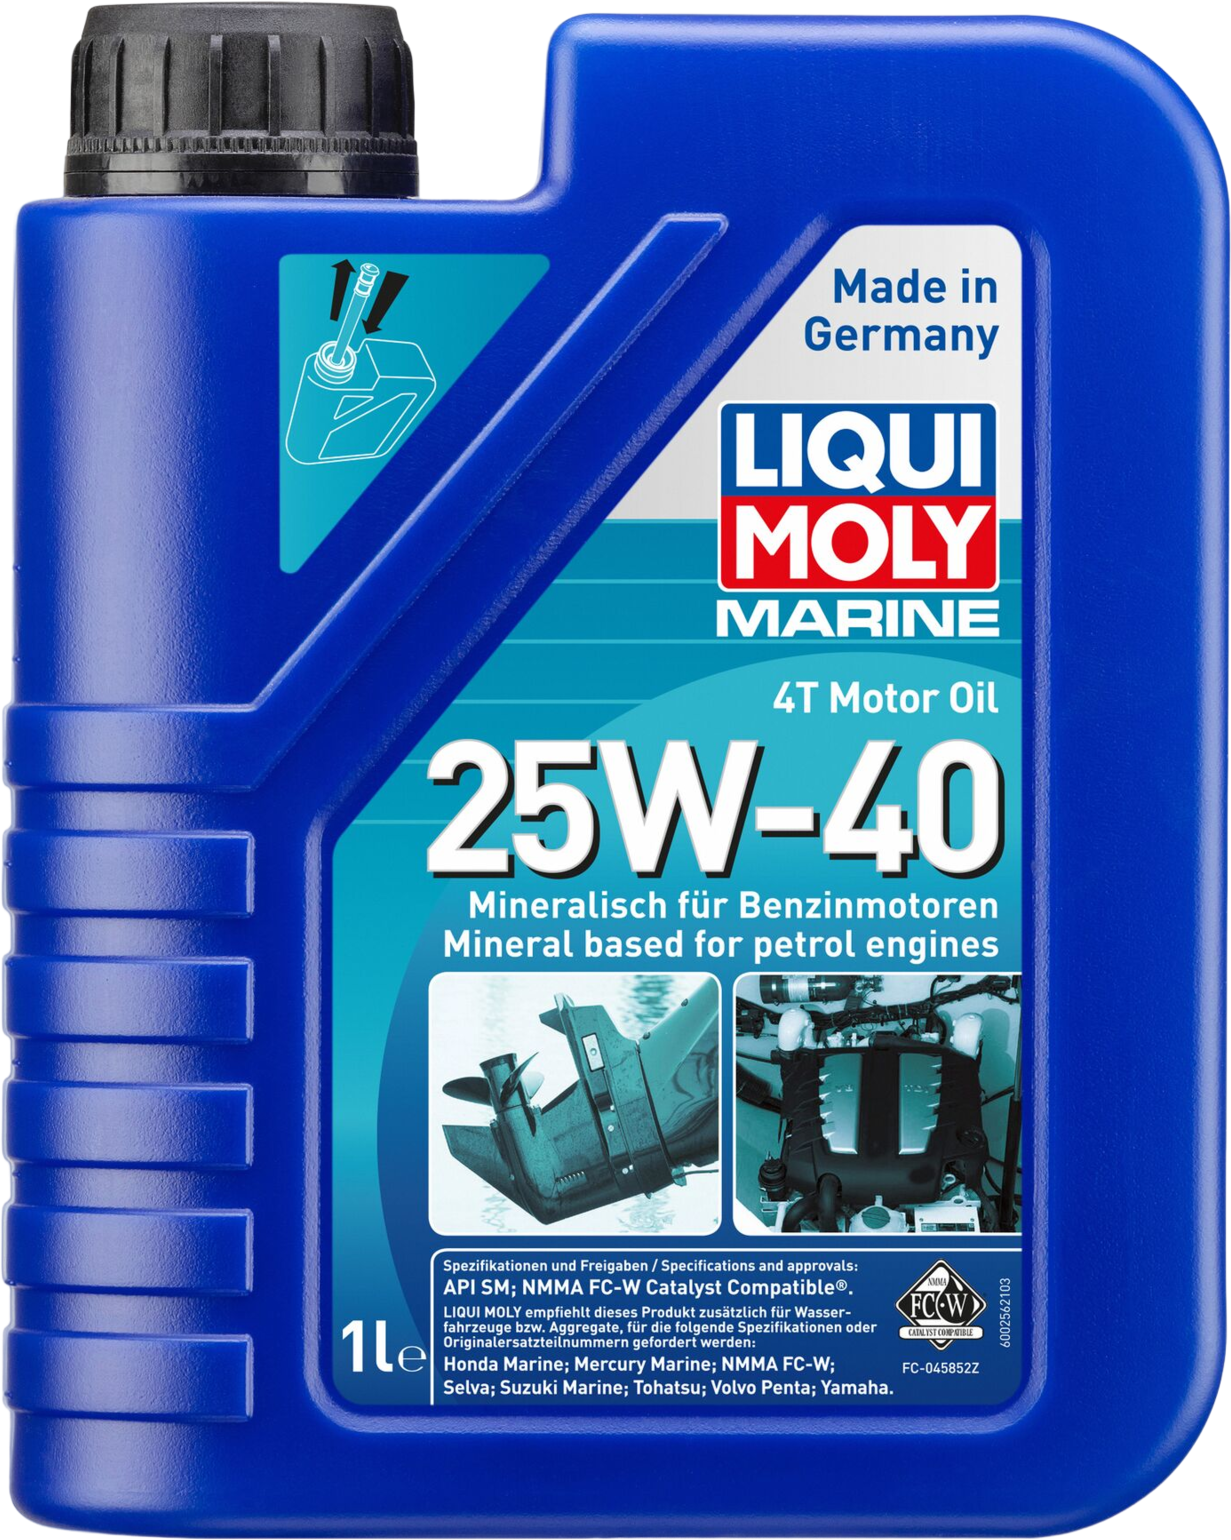 Liqui Moly Marine 4T Motor Oil 25W-40, 6 x 1 lt detail 2